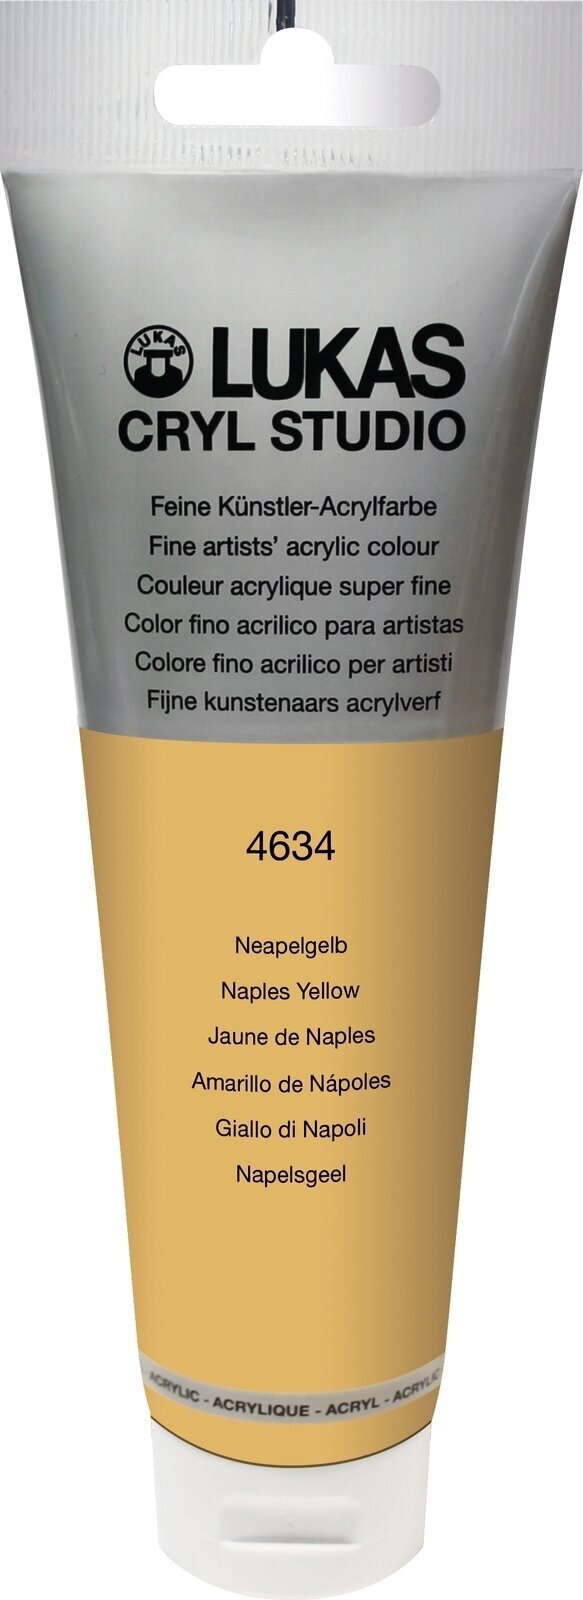 Akrylová barva Lukas Cryl Studio Akrylová barva 125 ml Naples Yellow